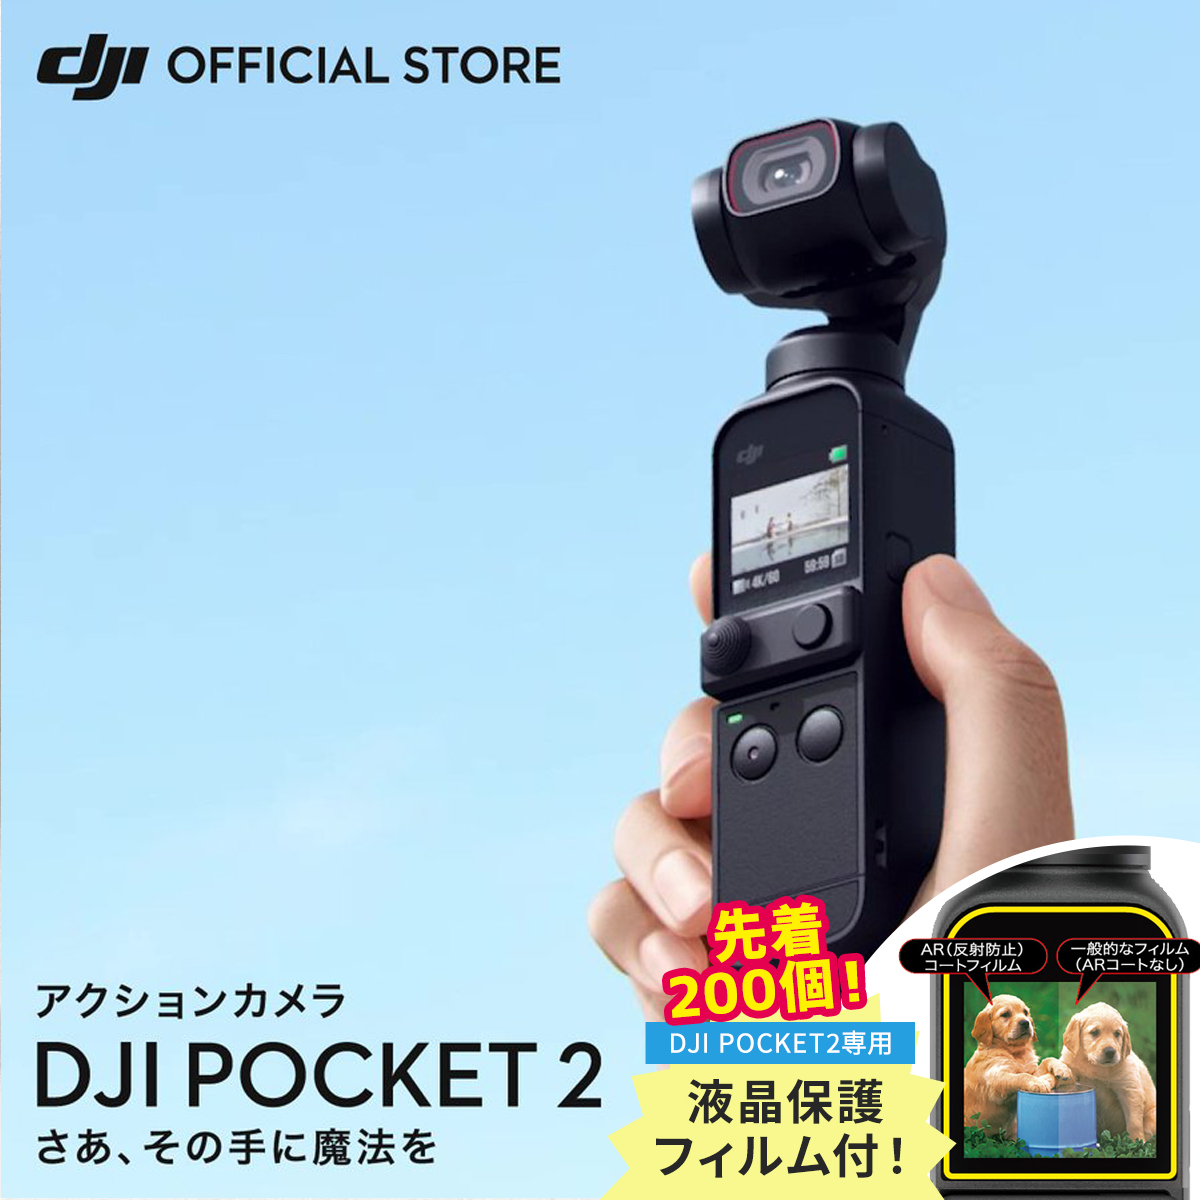 送料無料お手入れ要らず 真打本舗国内正規品DJI Pocket 2 限定コンボ ...